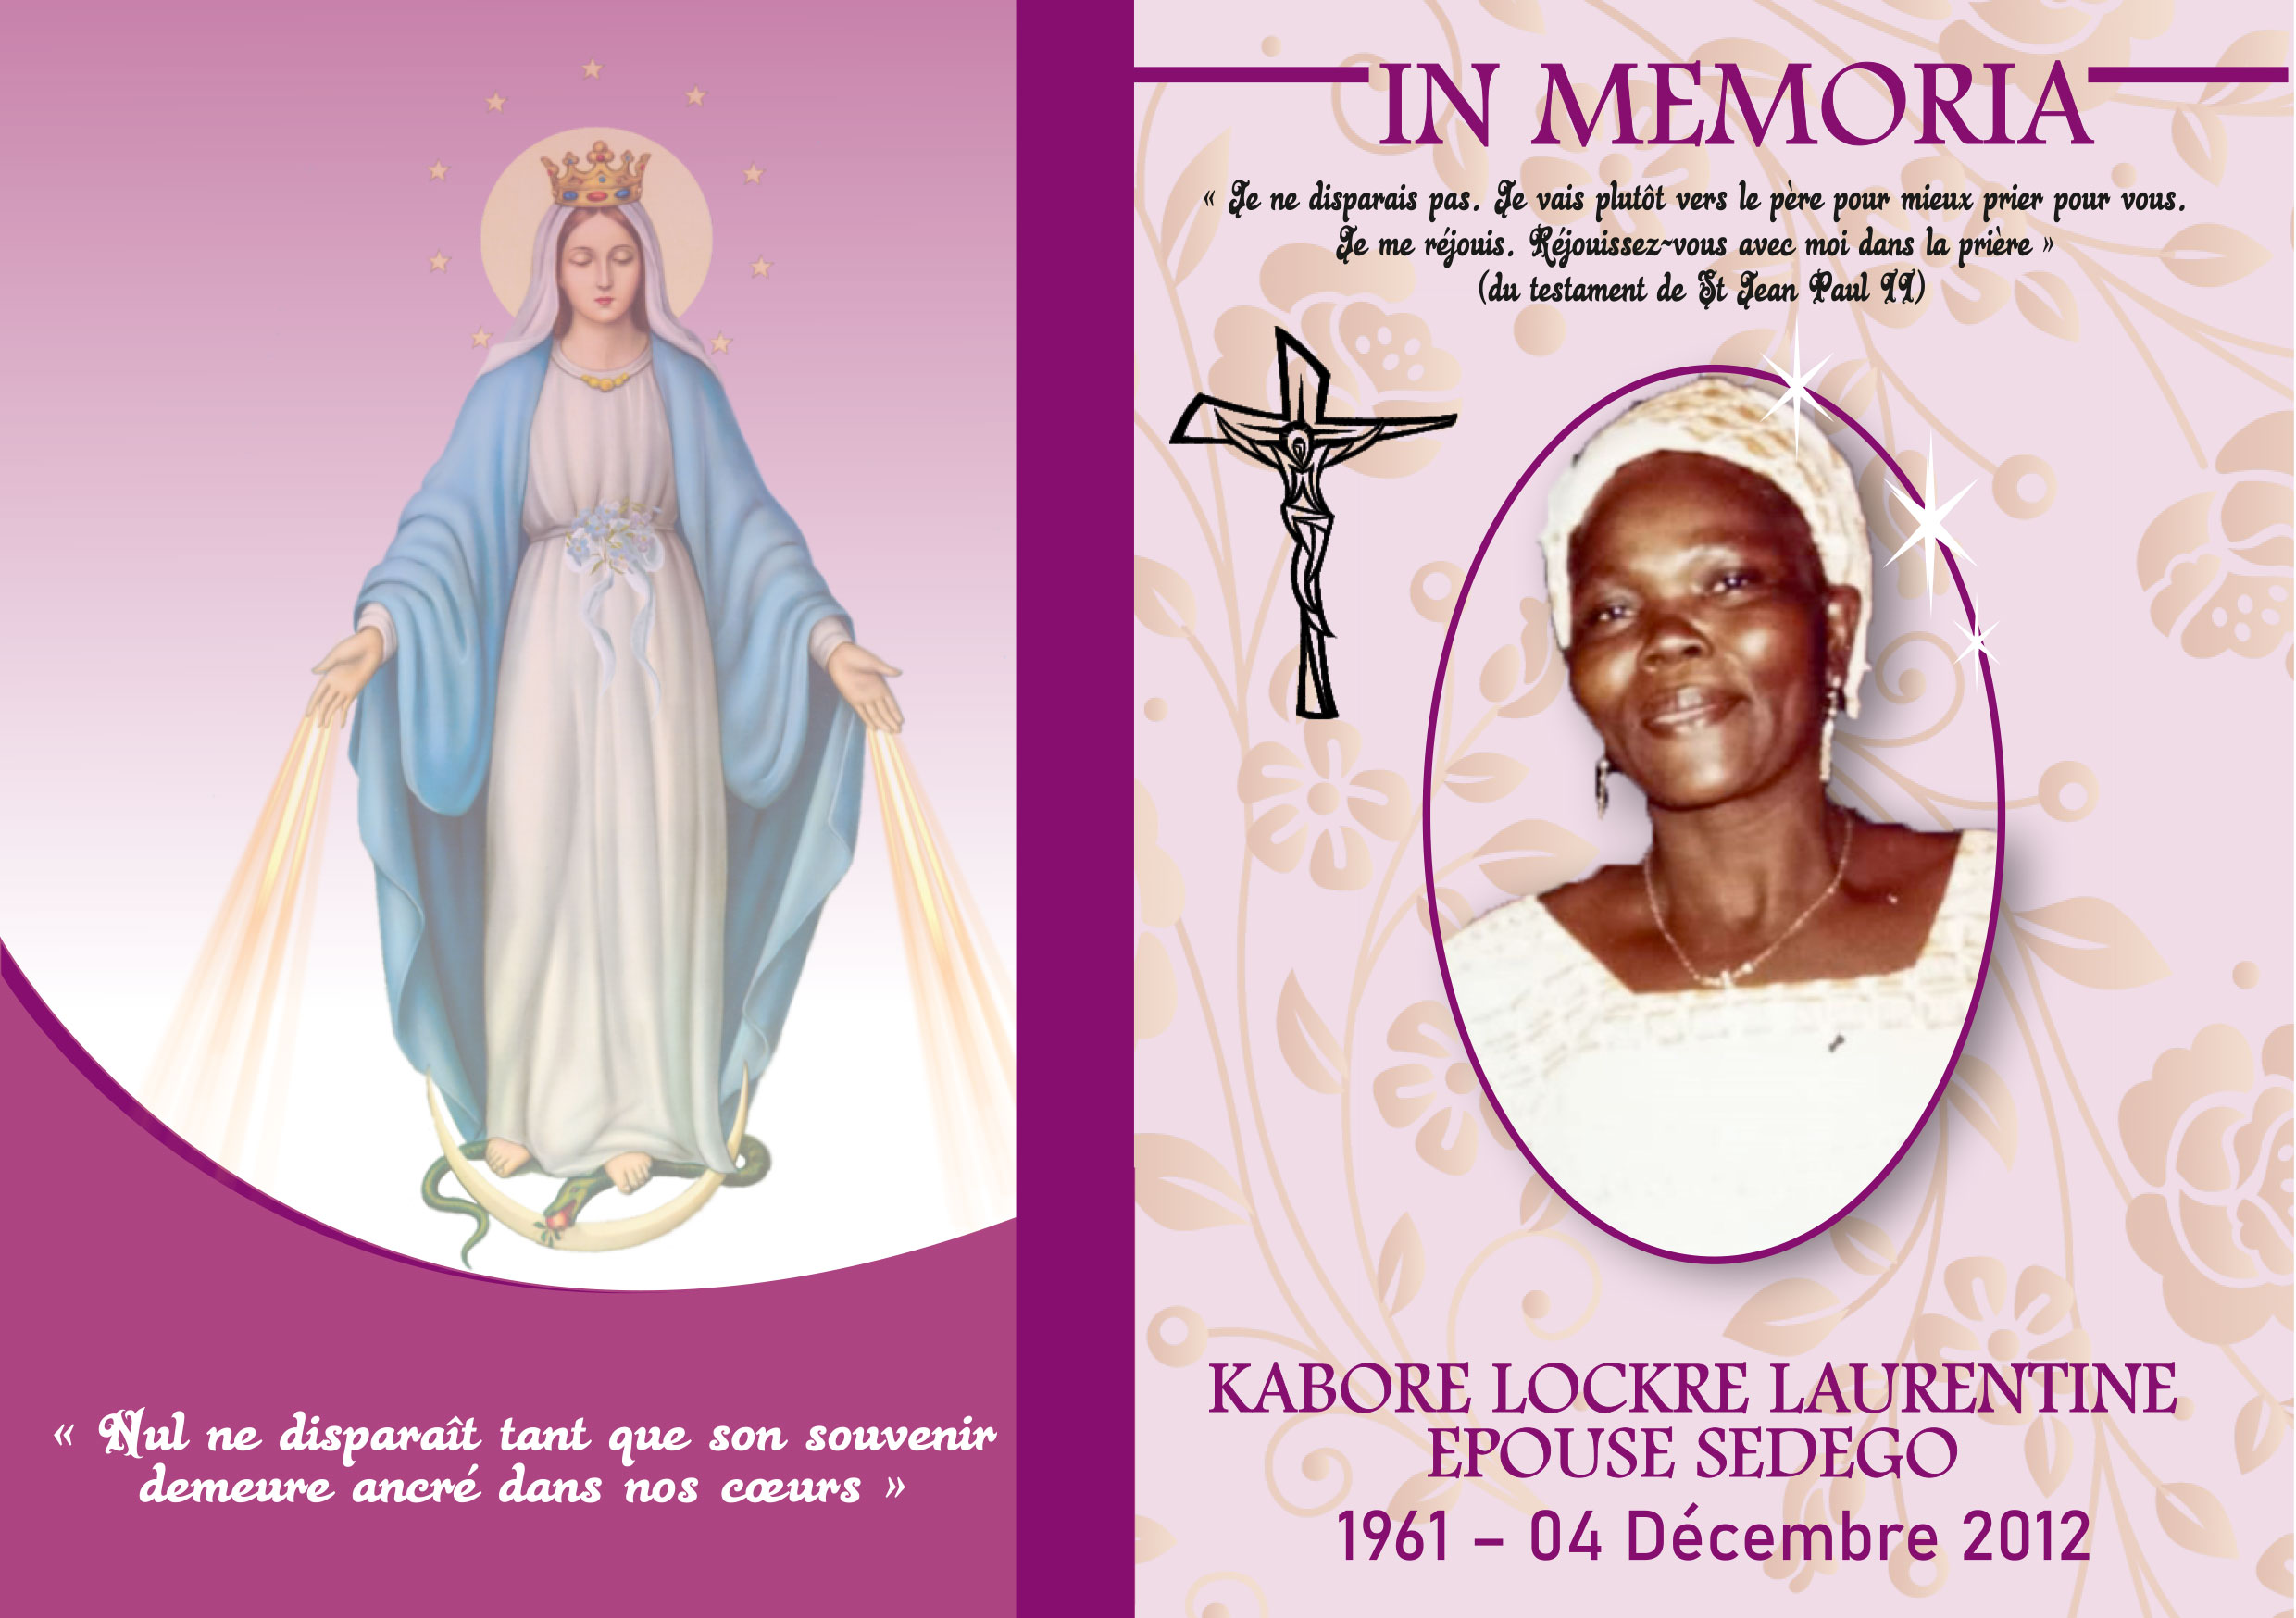 In memoria : Kaboré Lockré Laurentine épouse SEDEGO